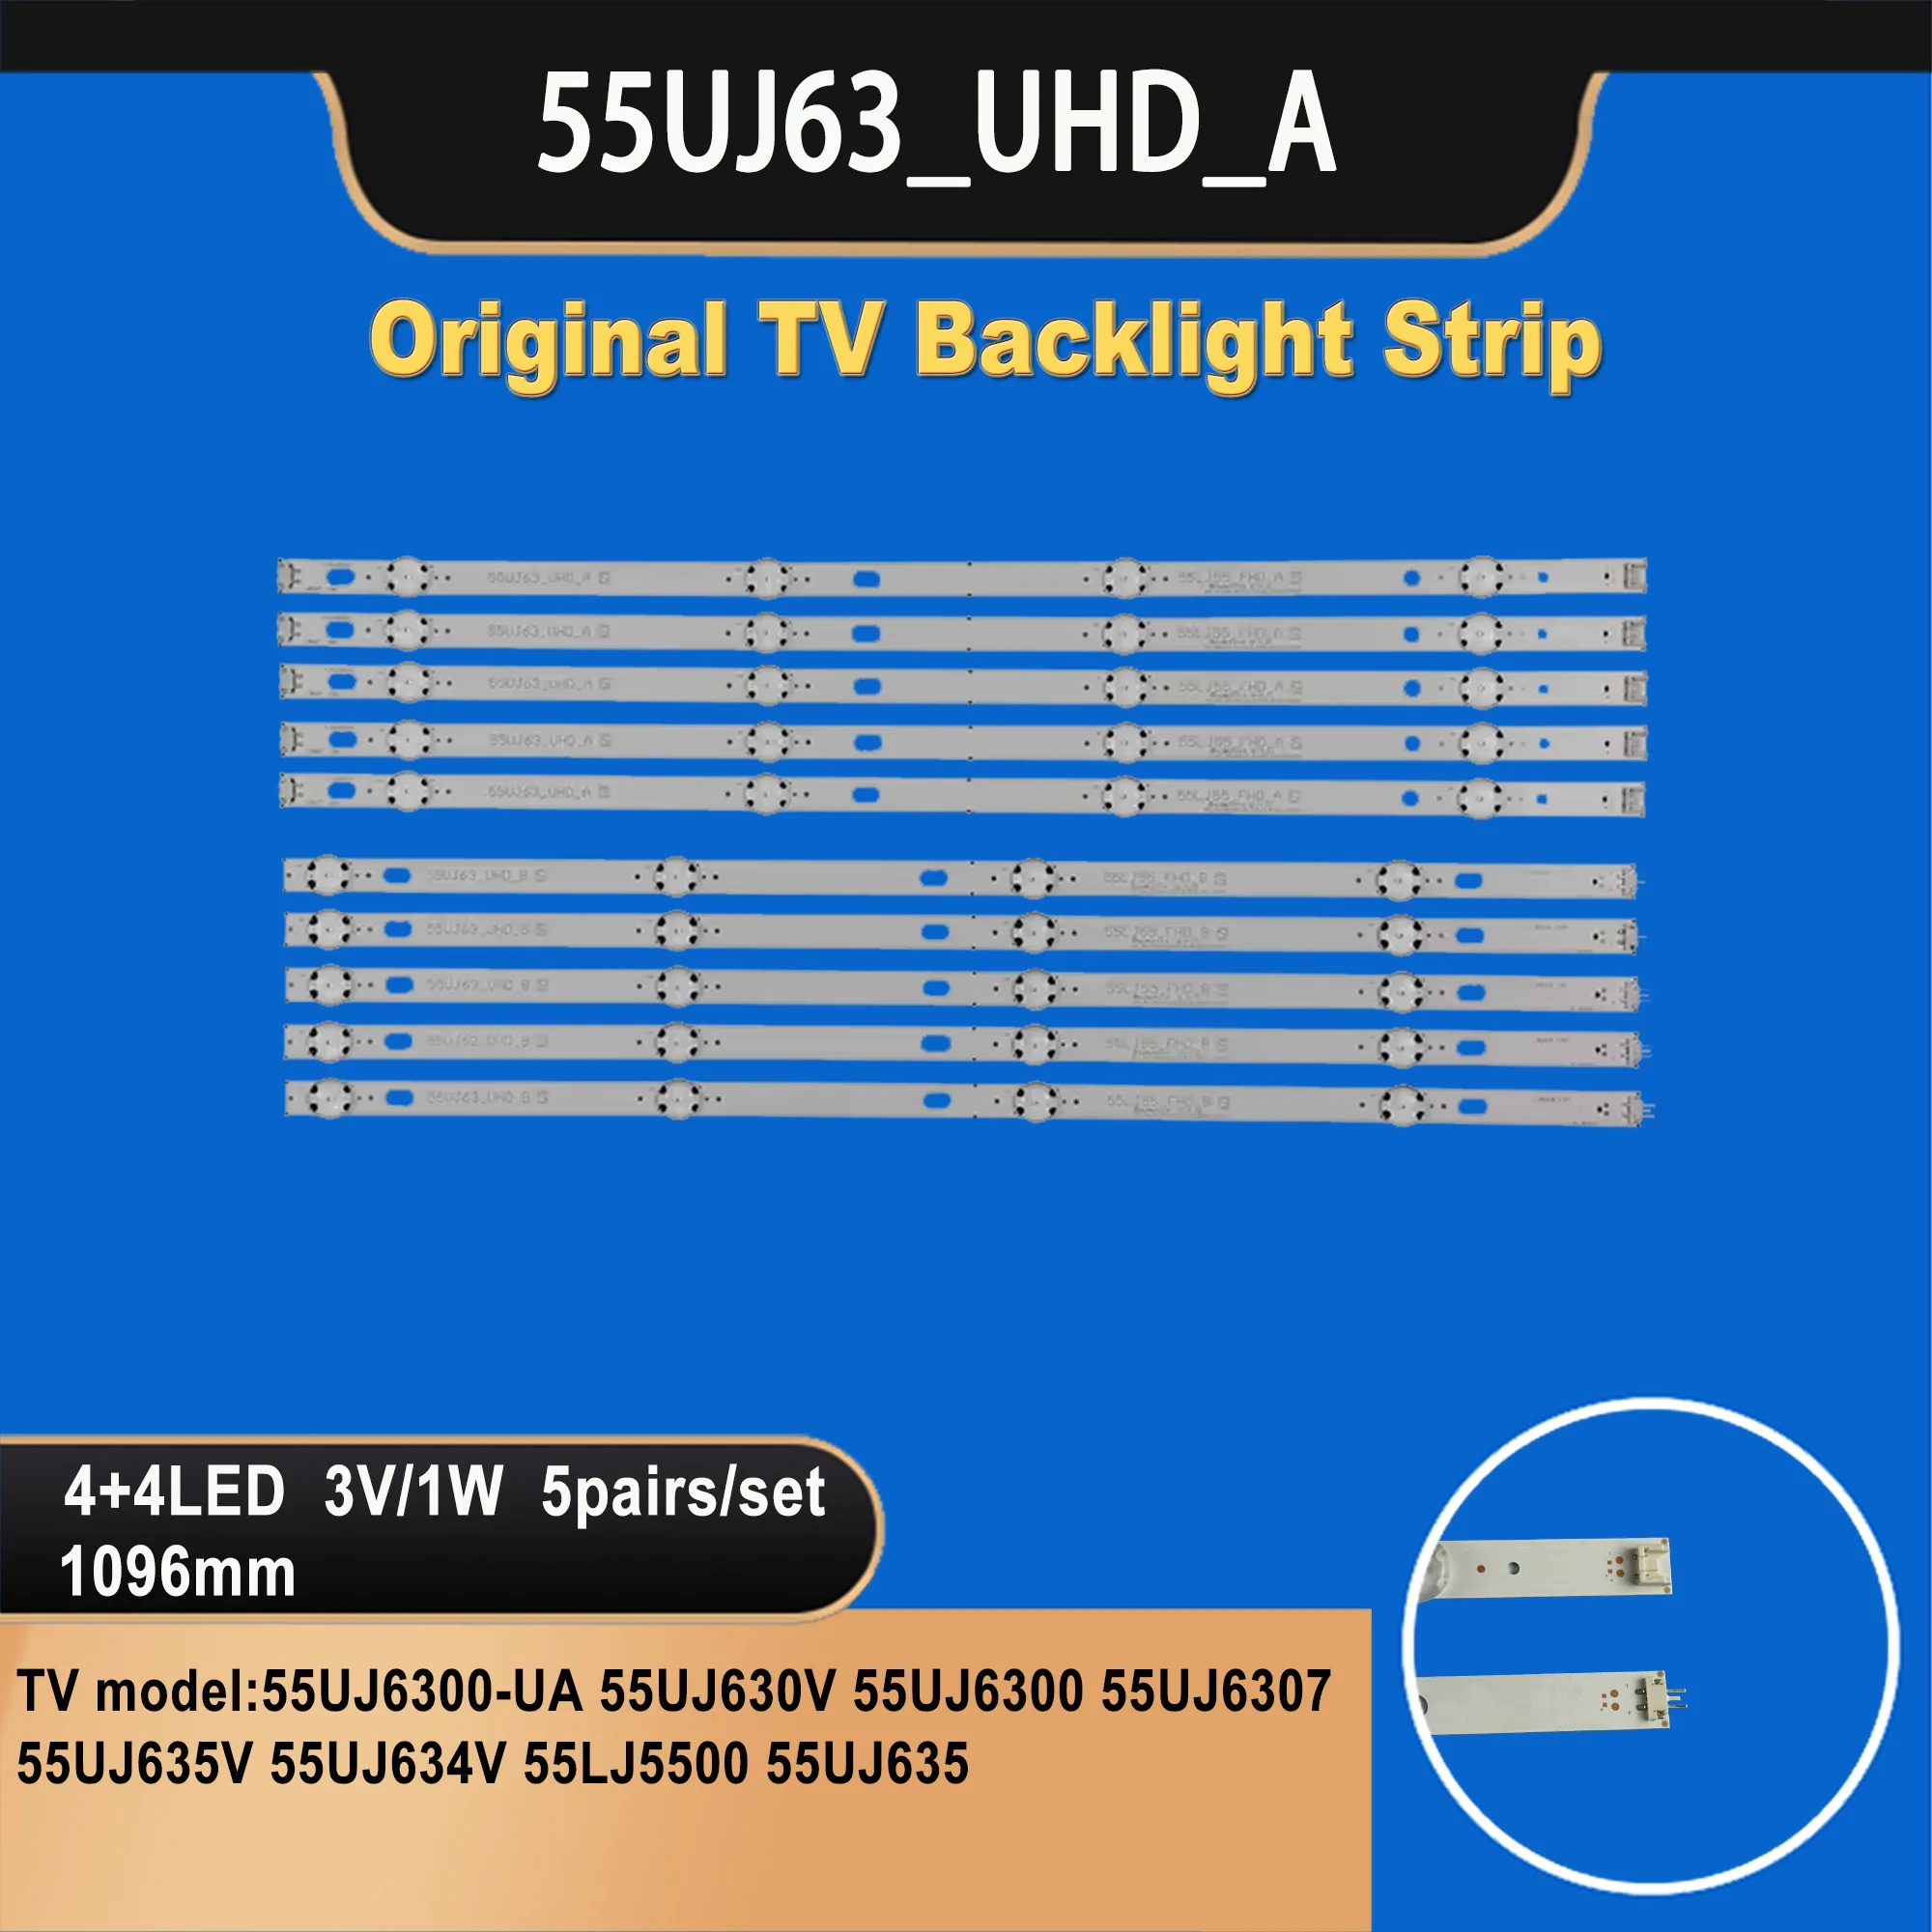 Лампа-для-подсветки-телевизора-для-ssc-_-55lj55-55uj63-_a-_-8led_rev01-55uj63-_-uhd-_-a-55uj6300-ua-55uj630v-55uj6300-55uj6307-55uj635v